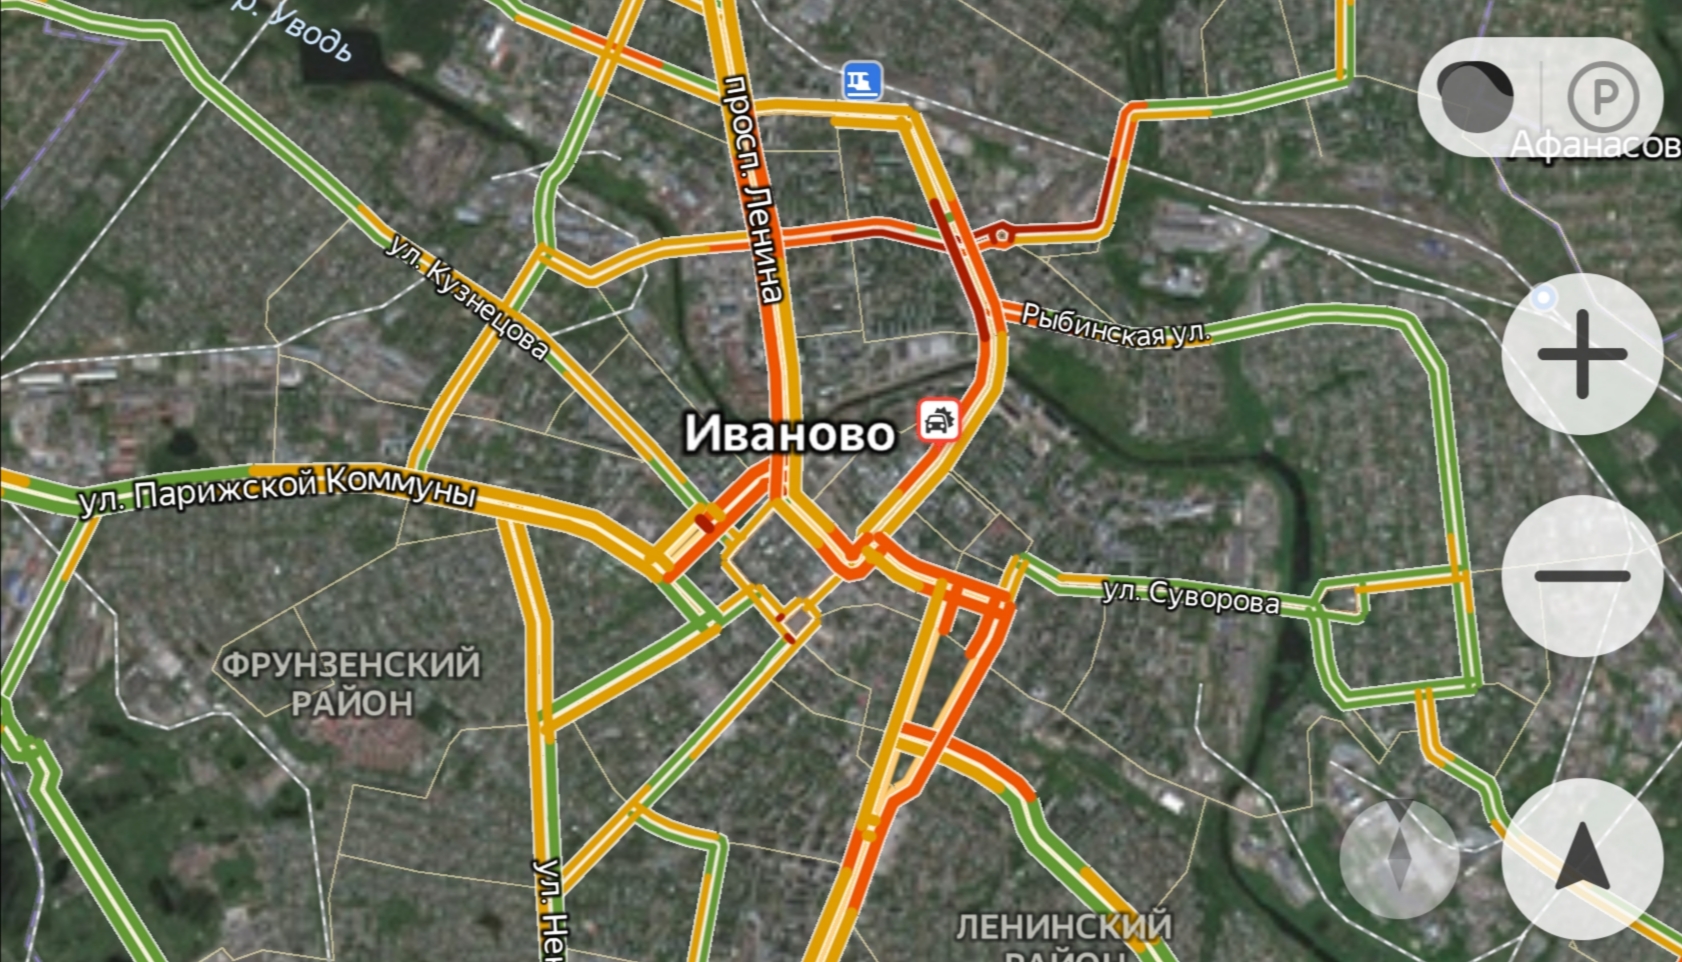 Пользователи социальных сетей жалуются на транспортный коллапс в Иванове